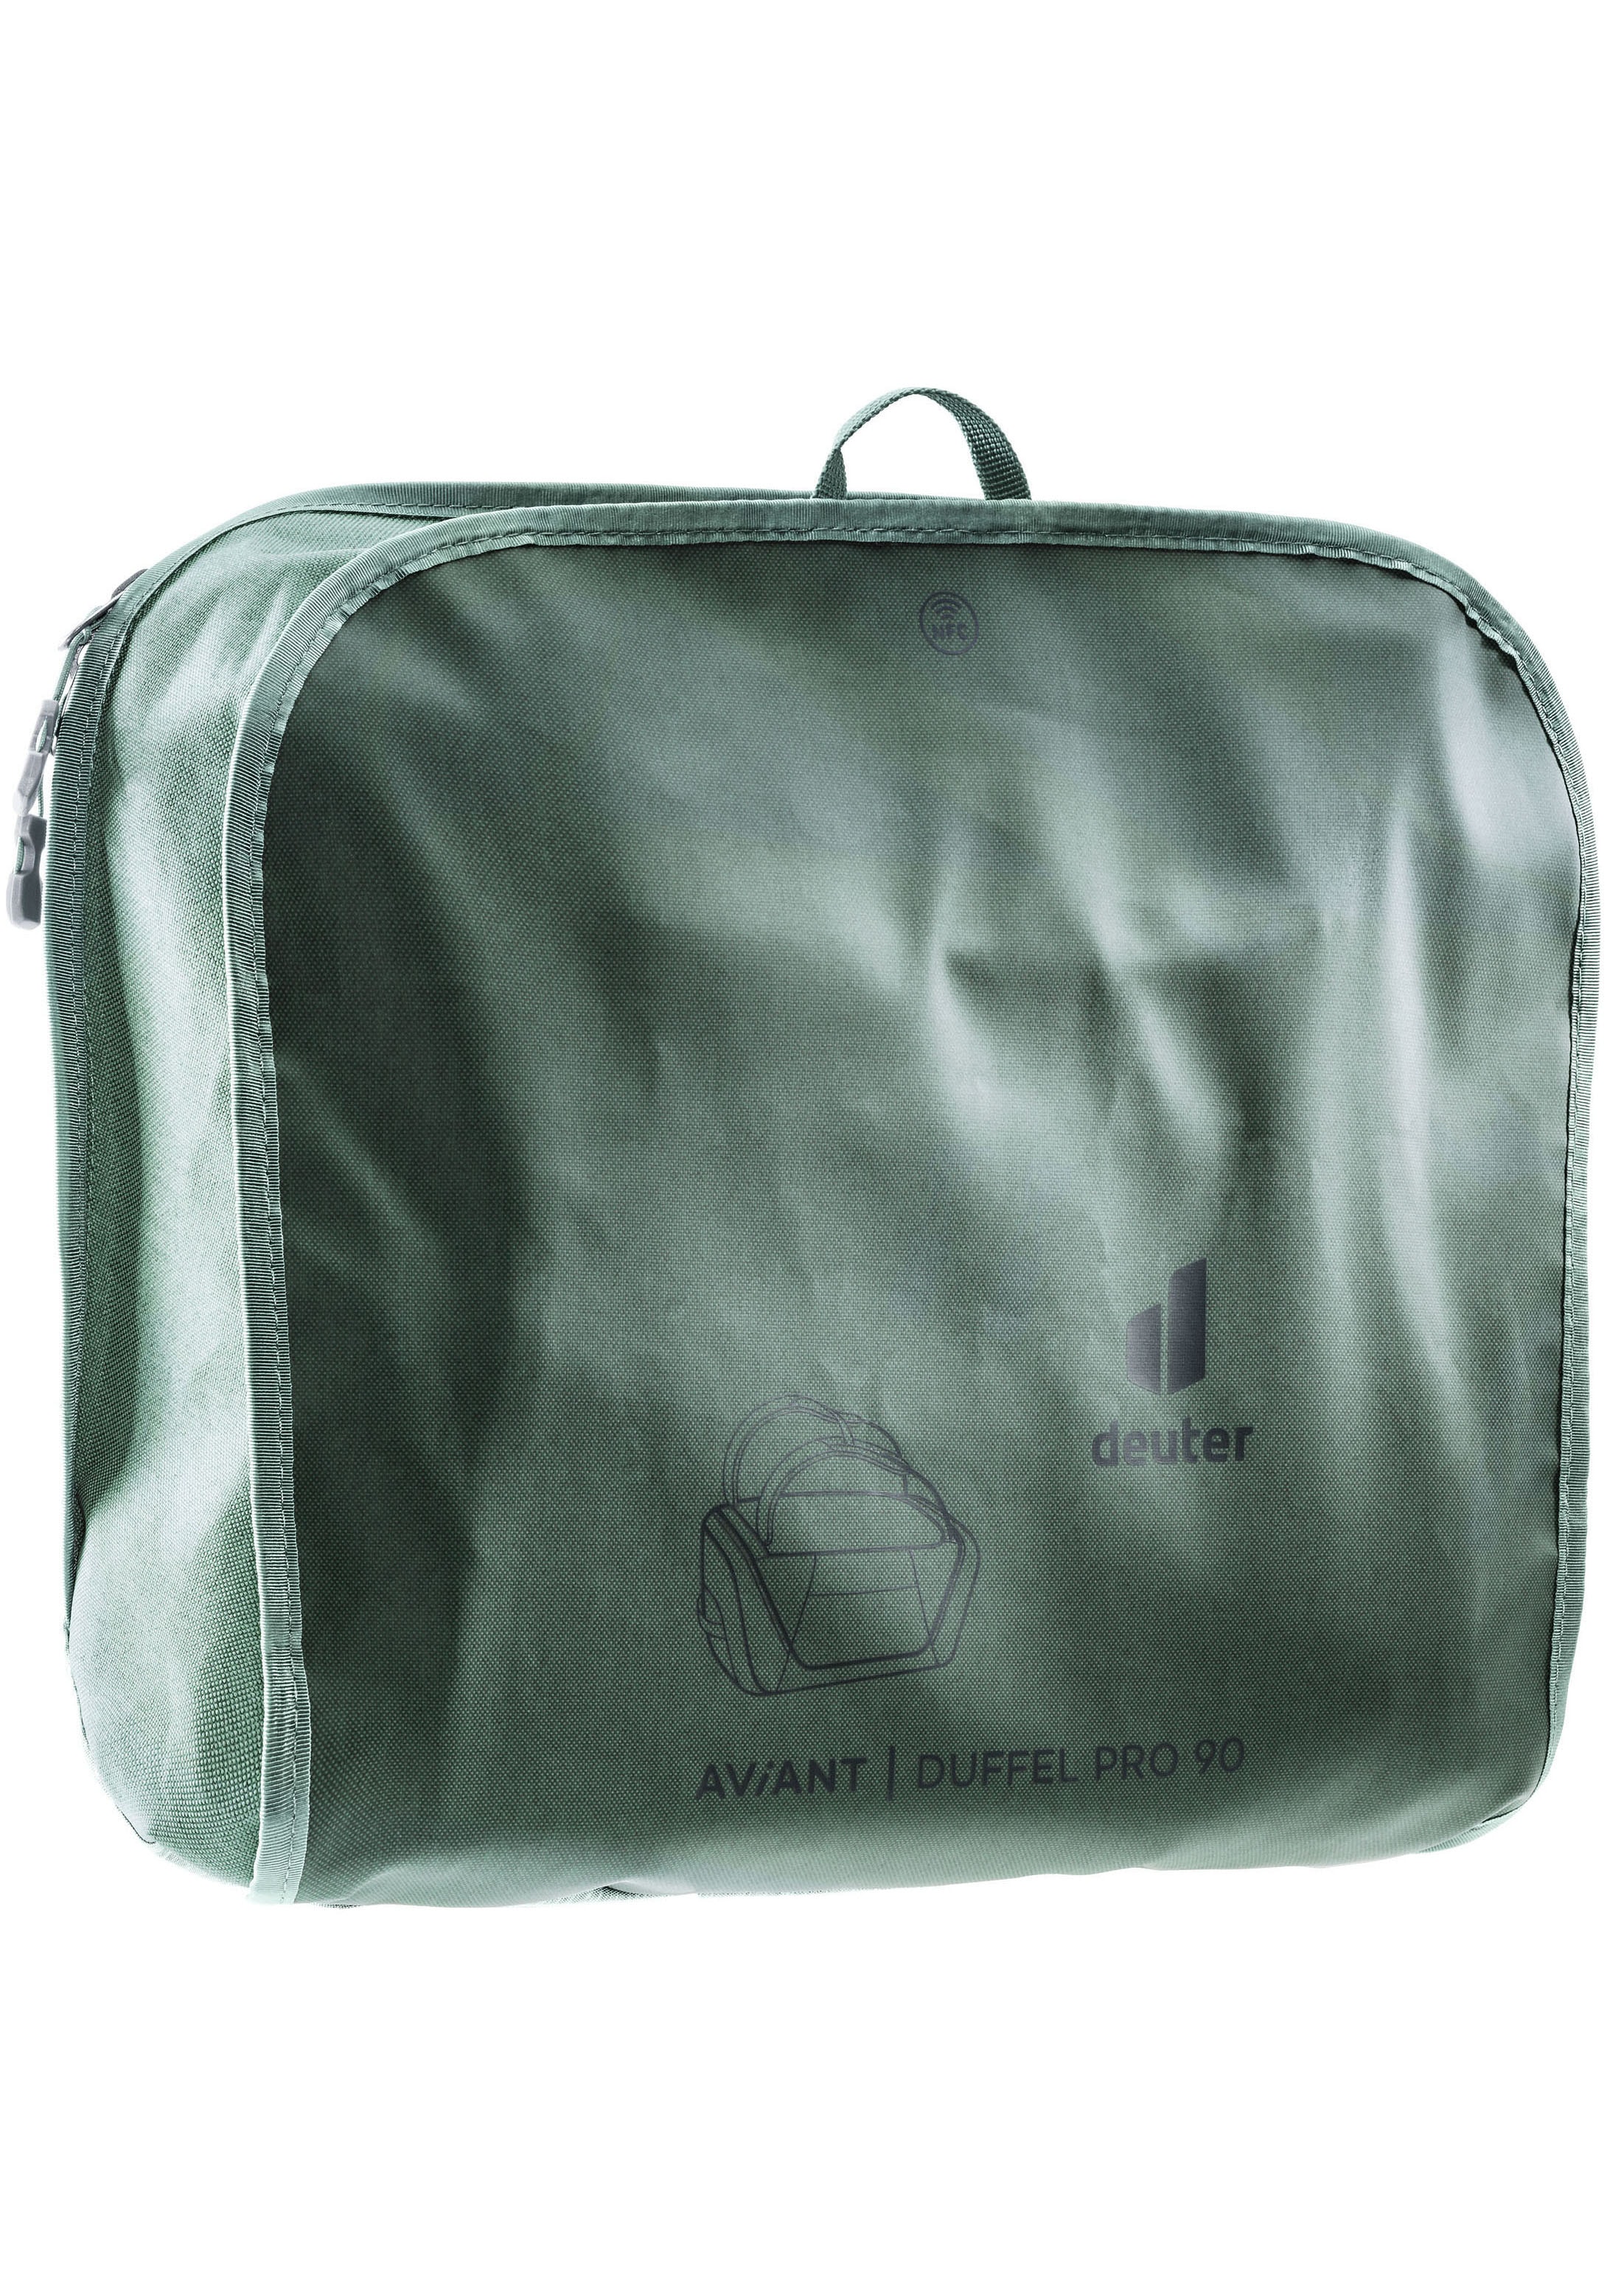 Kleidung für Reisetasche deuter Duffel online »AViANT bestellen 90«, Pro Kompression bei Jelmoli-Versand Schweiz innen